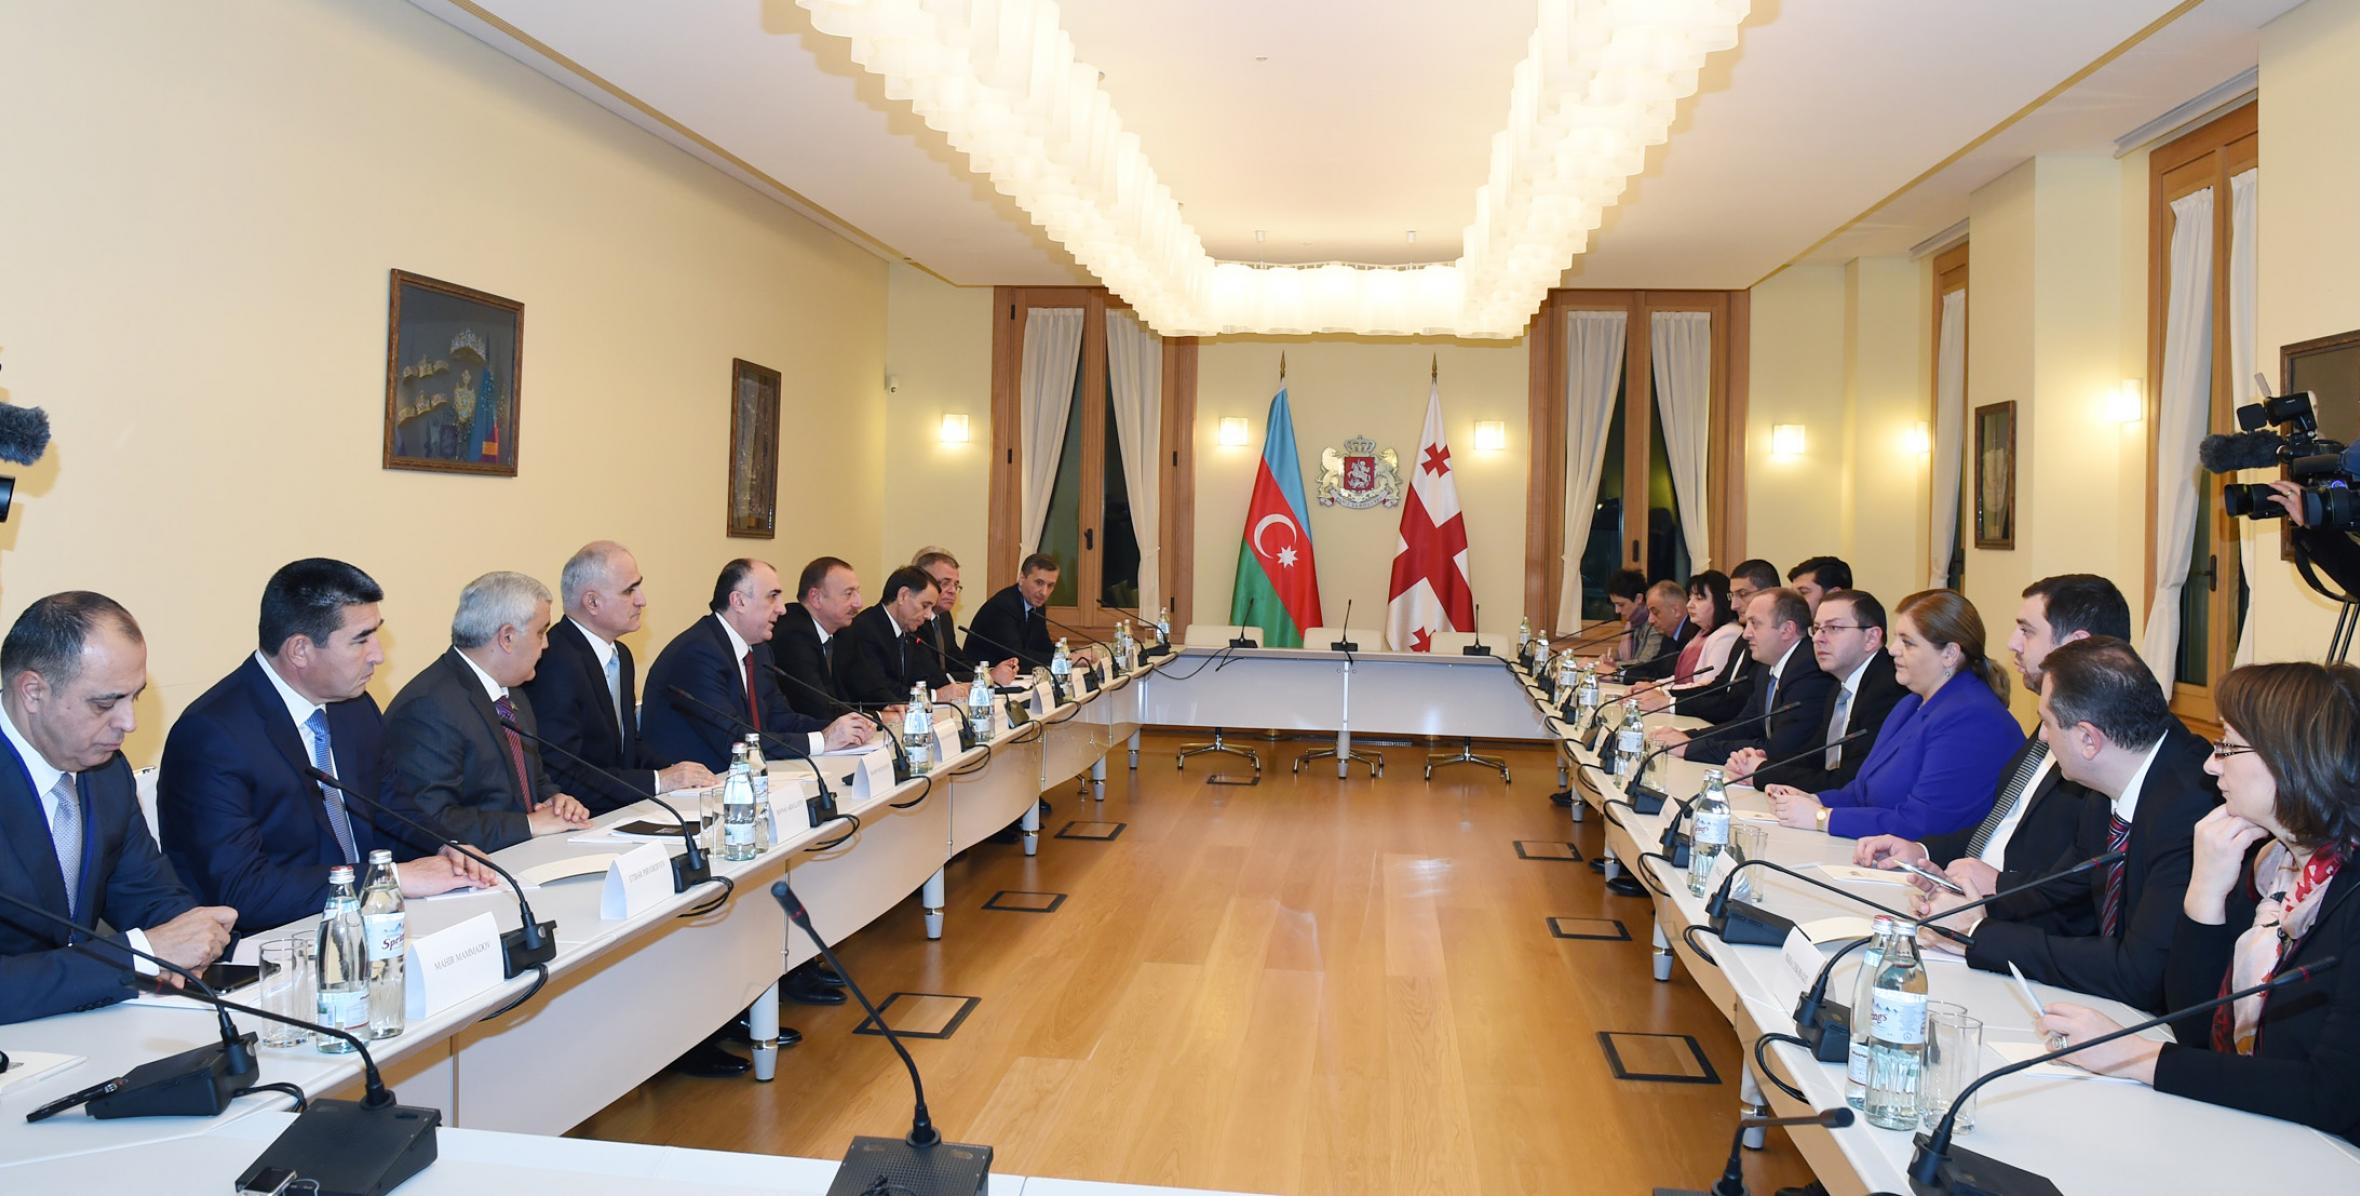 Состоялась встреча Ильхама Алиева и Президента Грузии Георгия Маргвелашвили в расширенном составе